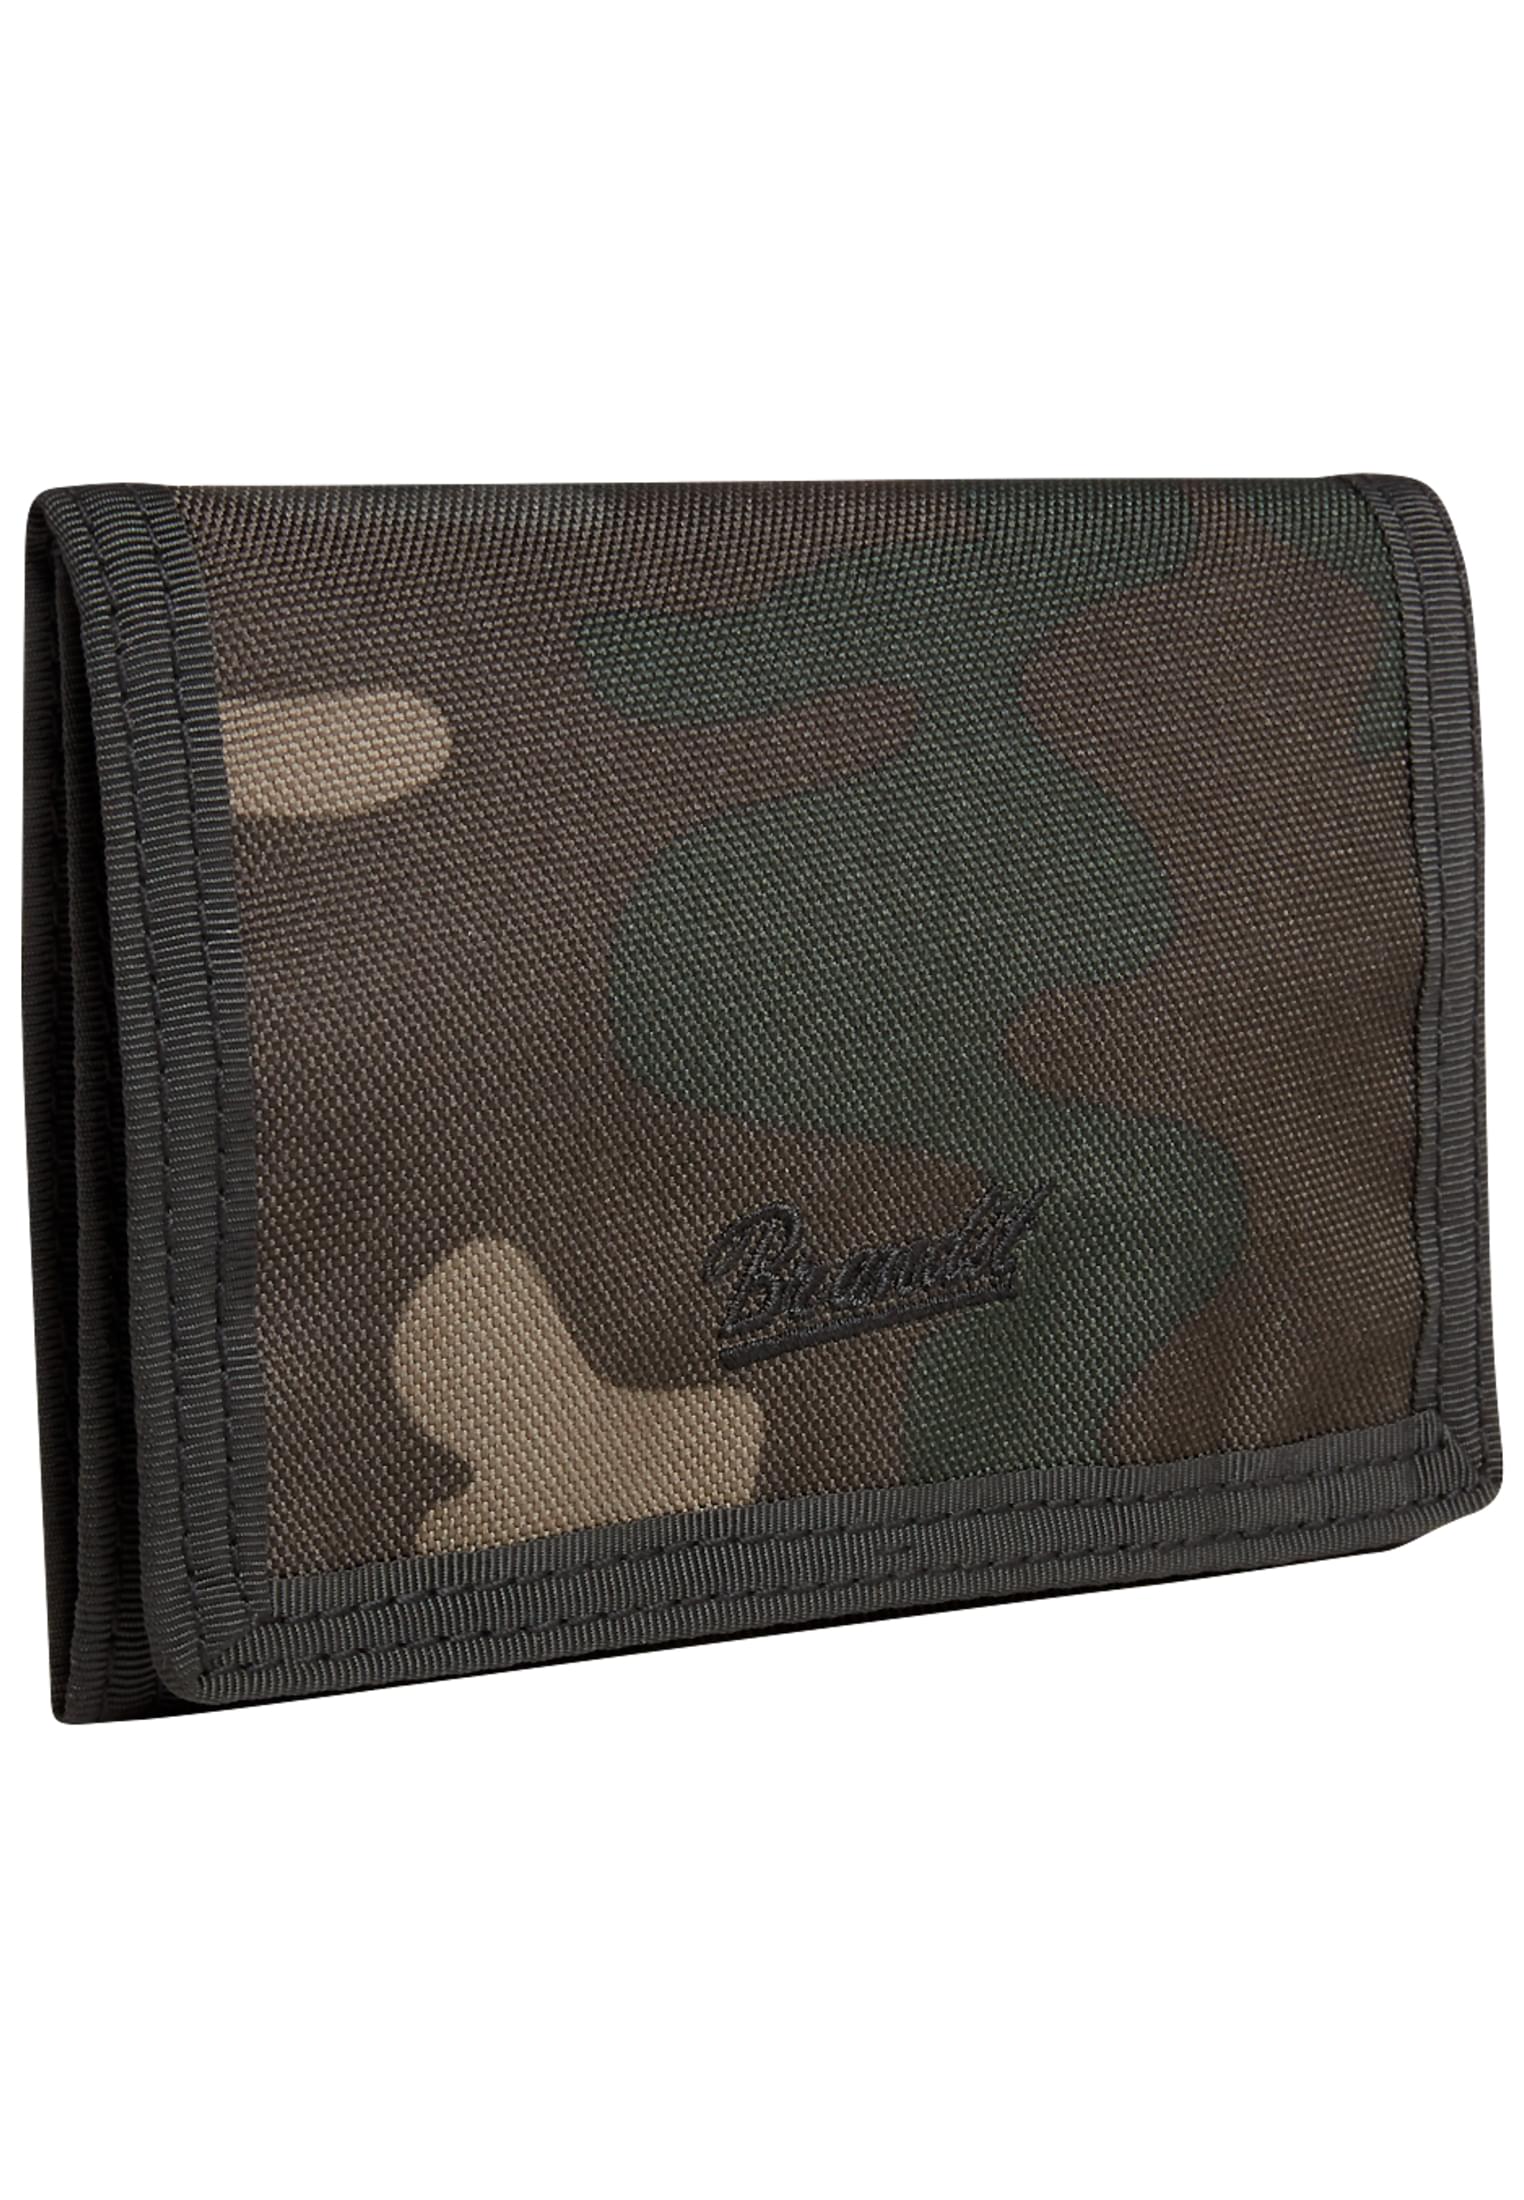 Taschen Wallet Three in Farbe darkcamo